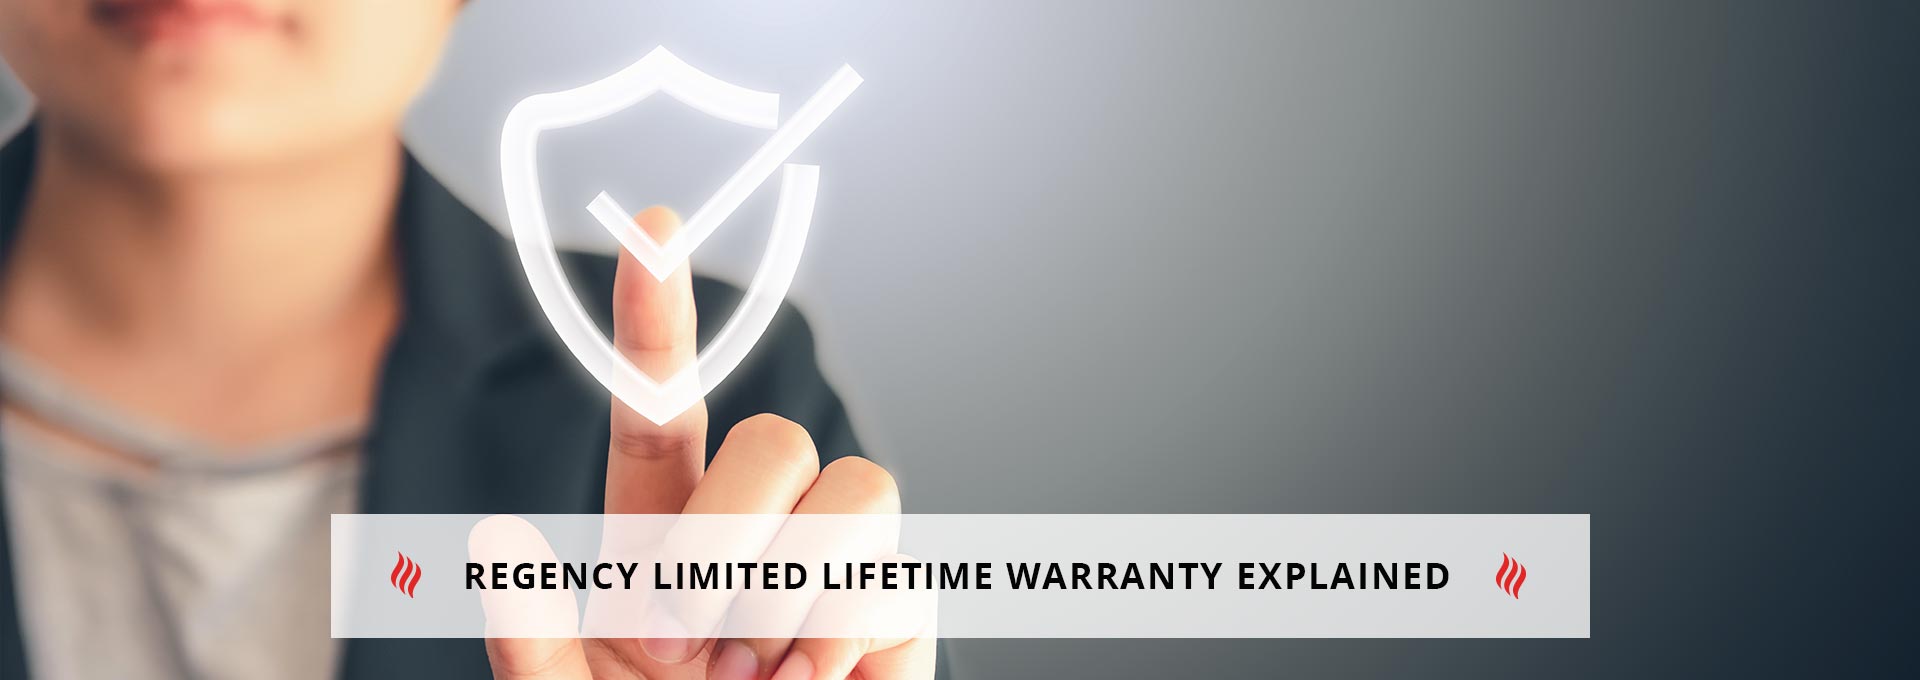 Regency Limited Lifetime Warranty Explained 